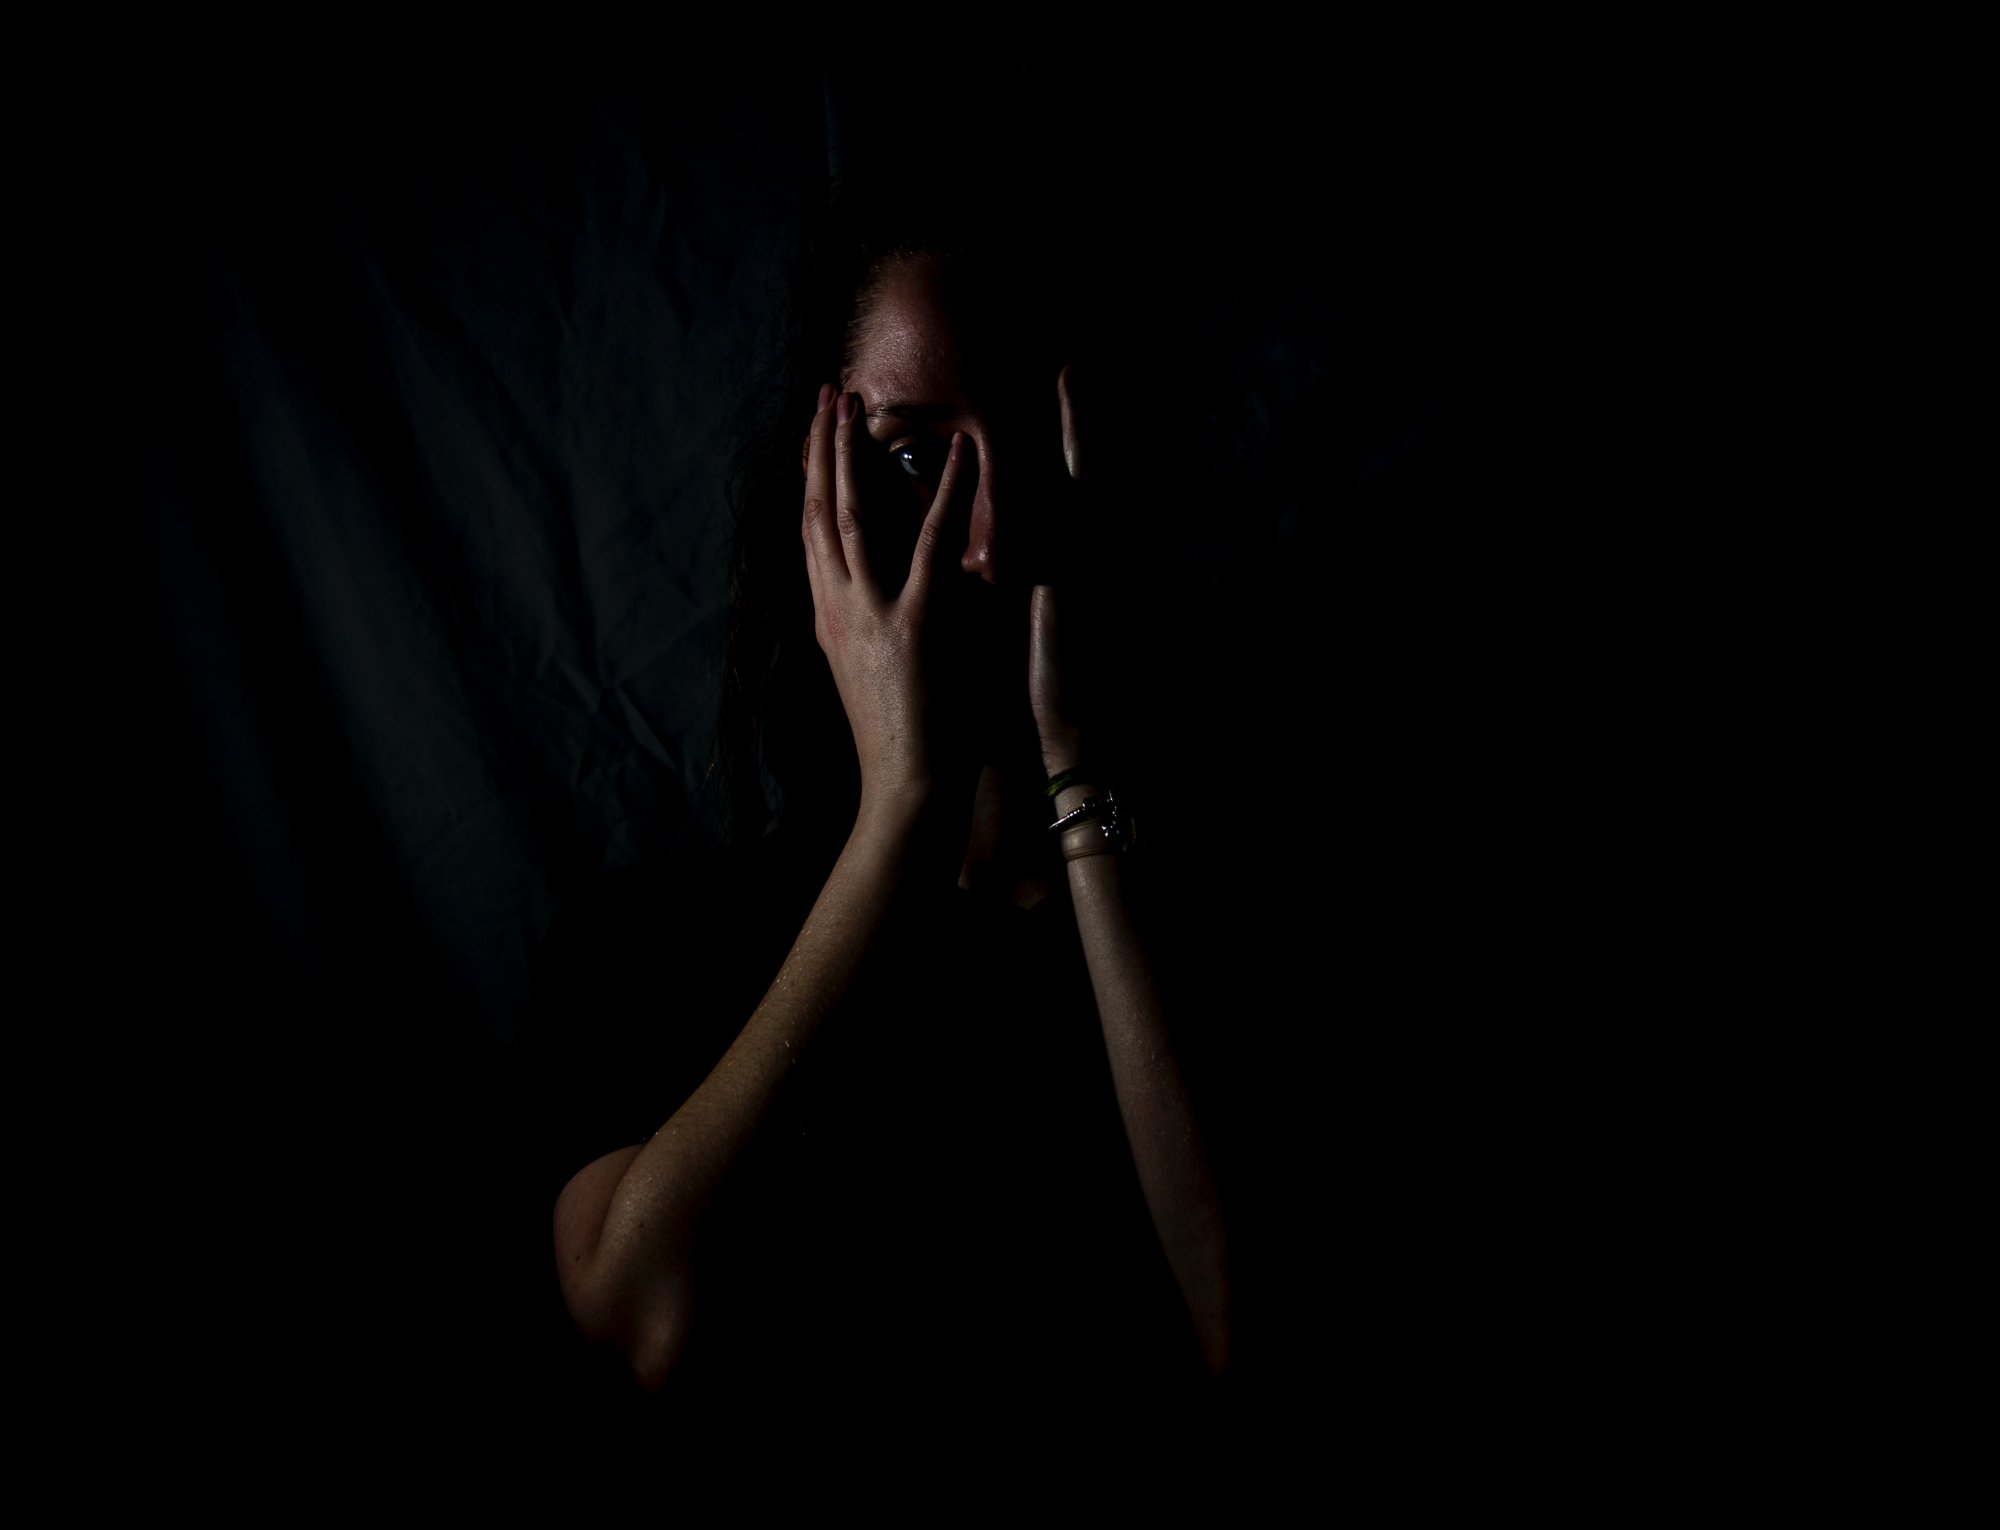 Γαλλία: Έκτακτο βοήθημα 600 ευρώ σε επιζώσες ενδοοικογενειακής βία